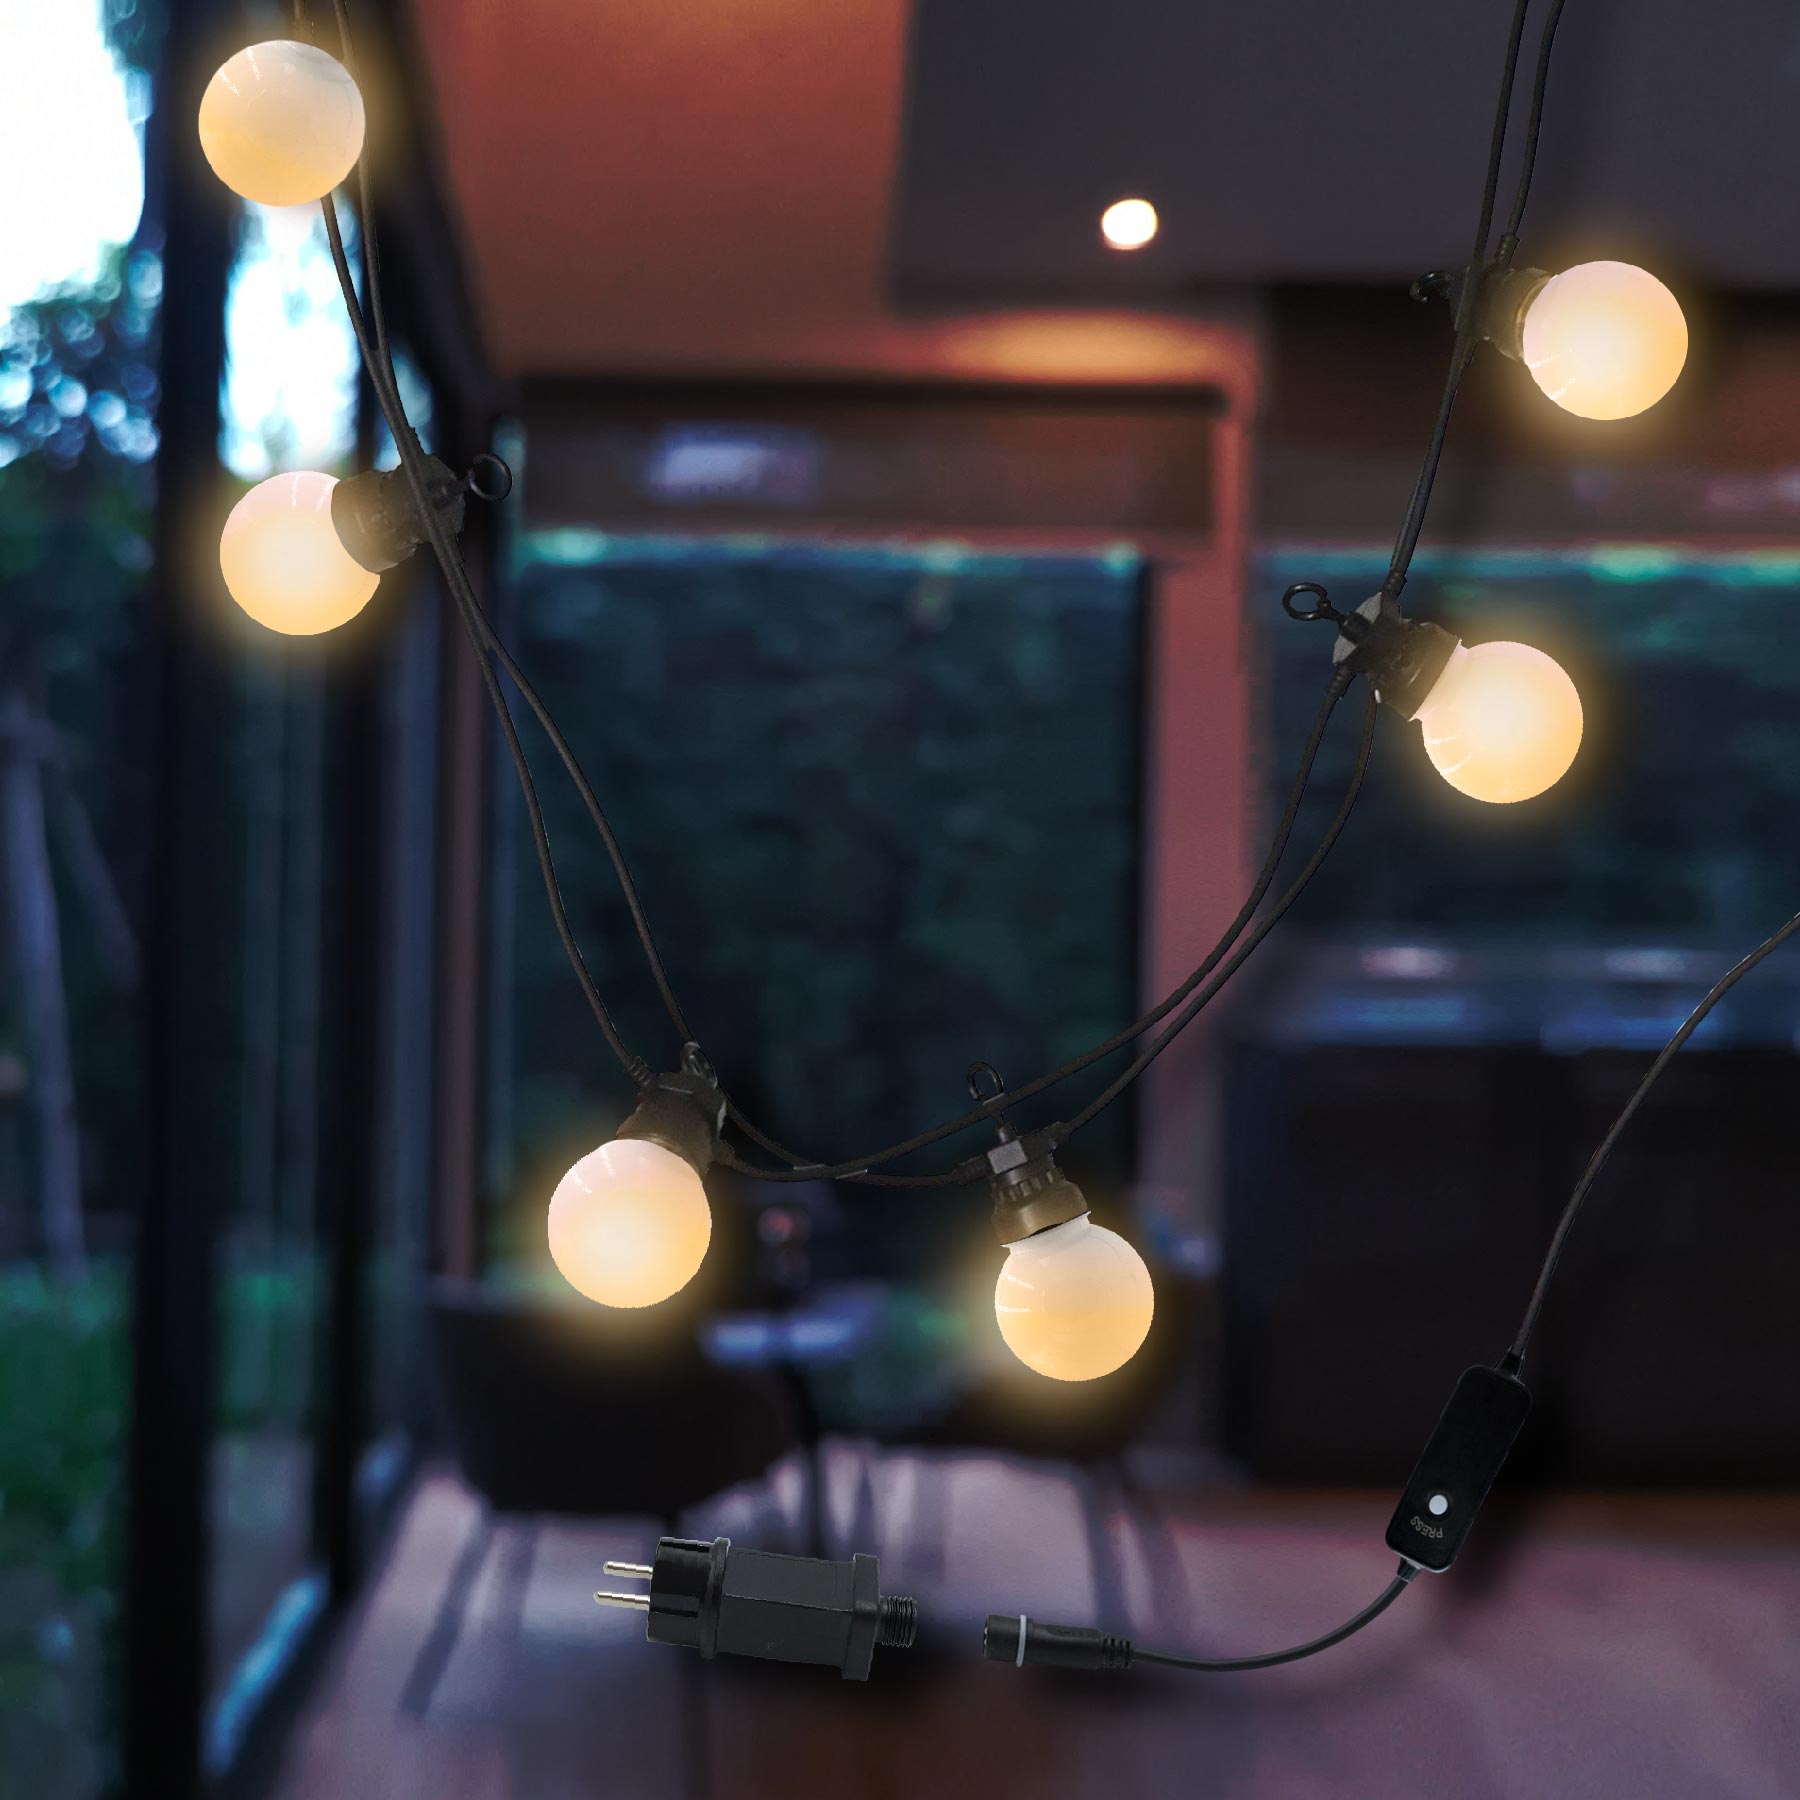 Guirlande guinguette ampoule 15 LEDs blanc chaud et multicolore 3,7 m -  Éclairage extérieur - Luminaire exterieur - Jardin et Plein air